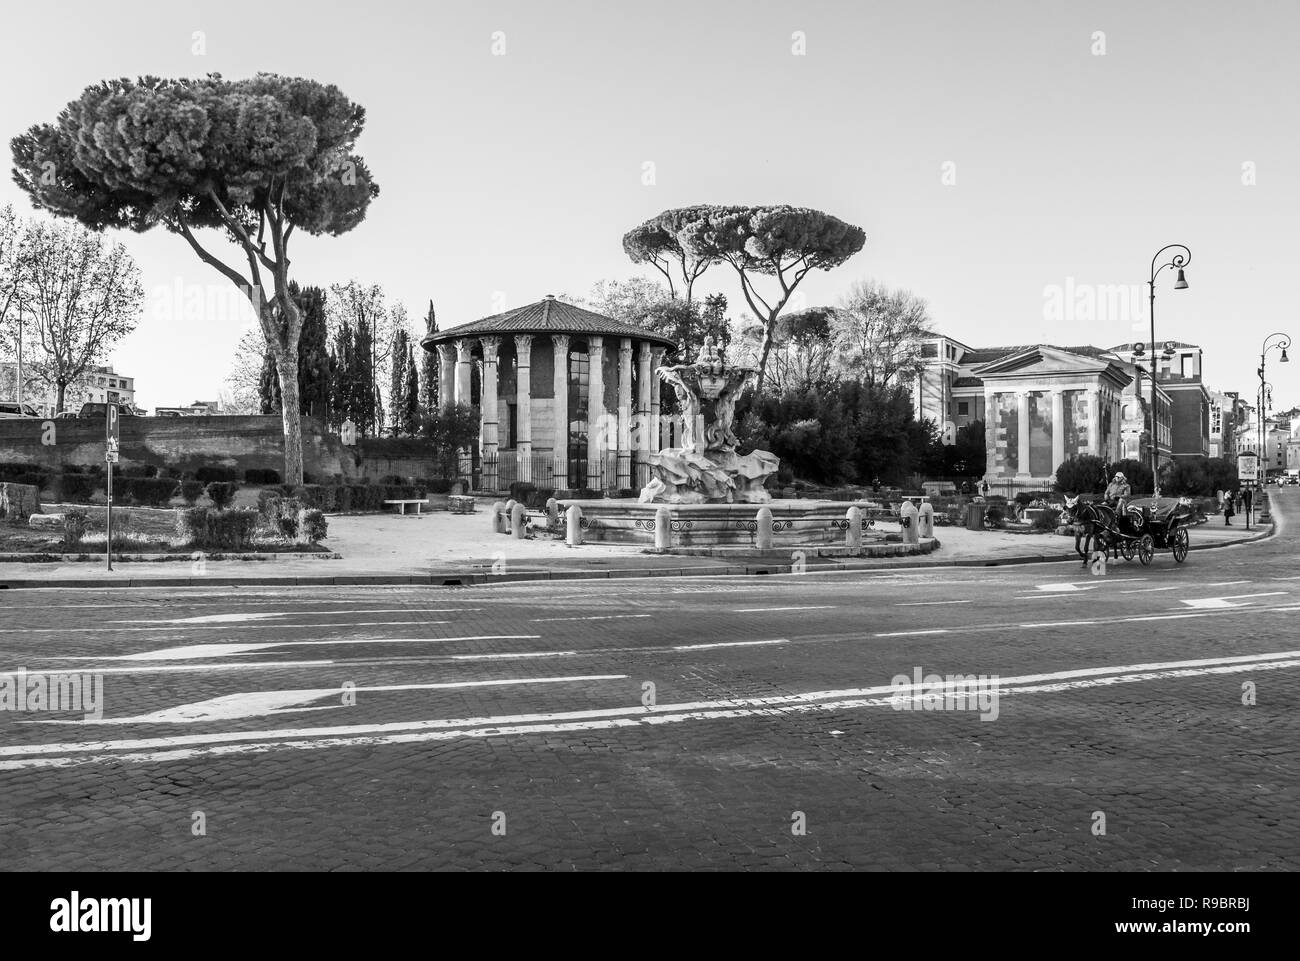 Rom (Italien) - Die archäologischen Ruinen vom historischen Zentrum von Rom. Hier die "Bocca della Verità" Platz in der lungotevere Straße. Stockfoto